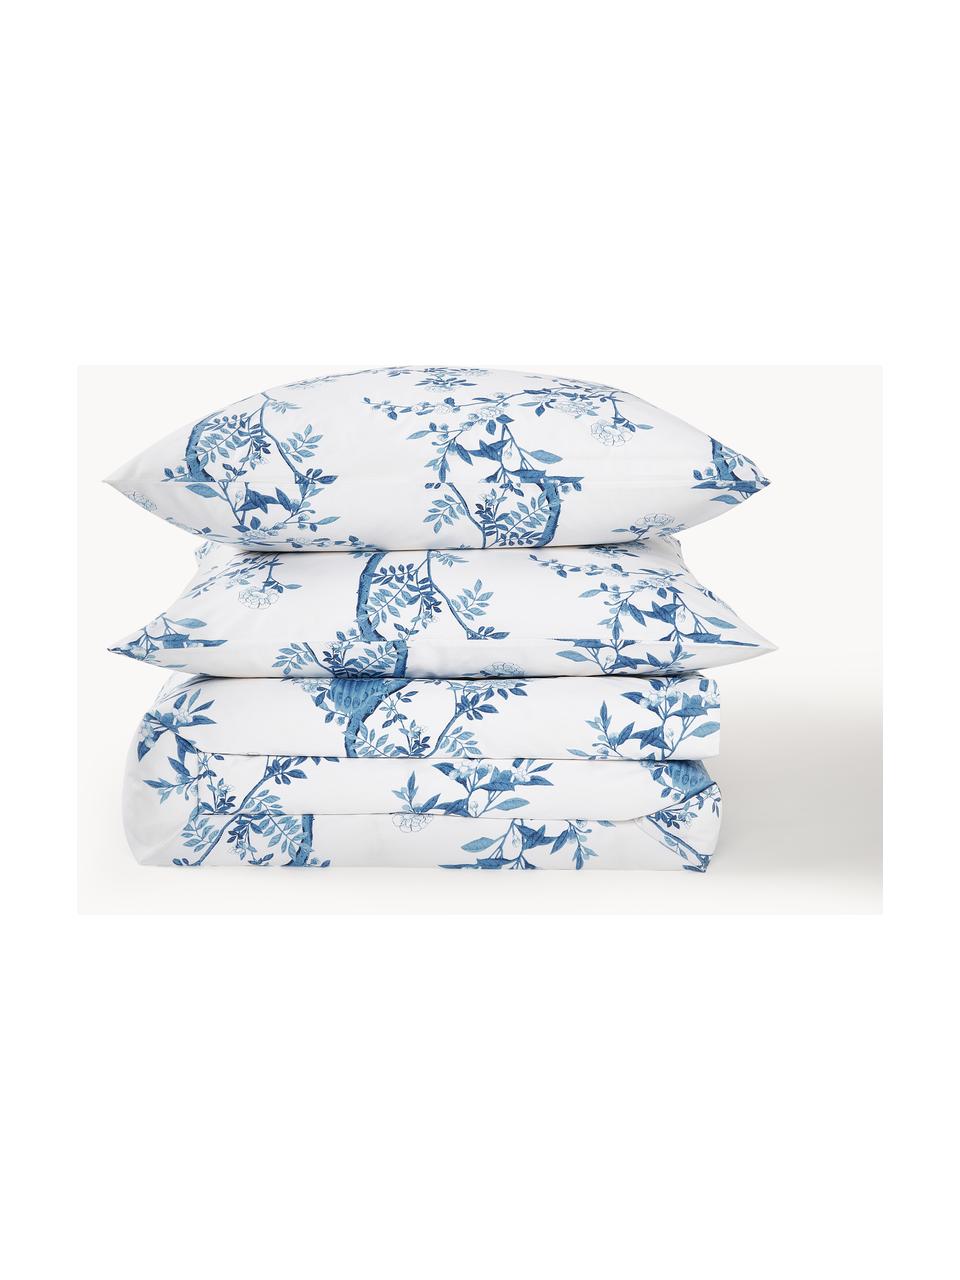 Copripiumino in cotone percalle con motivo floreale Annabelle, Bianco, blu, Larg. 155 x Lung. 220 cm